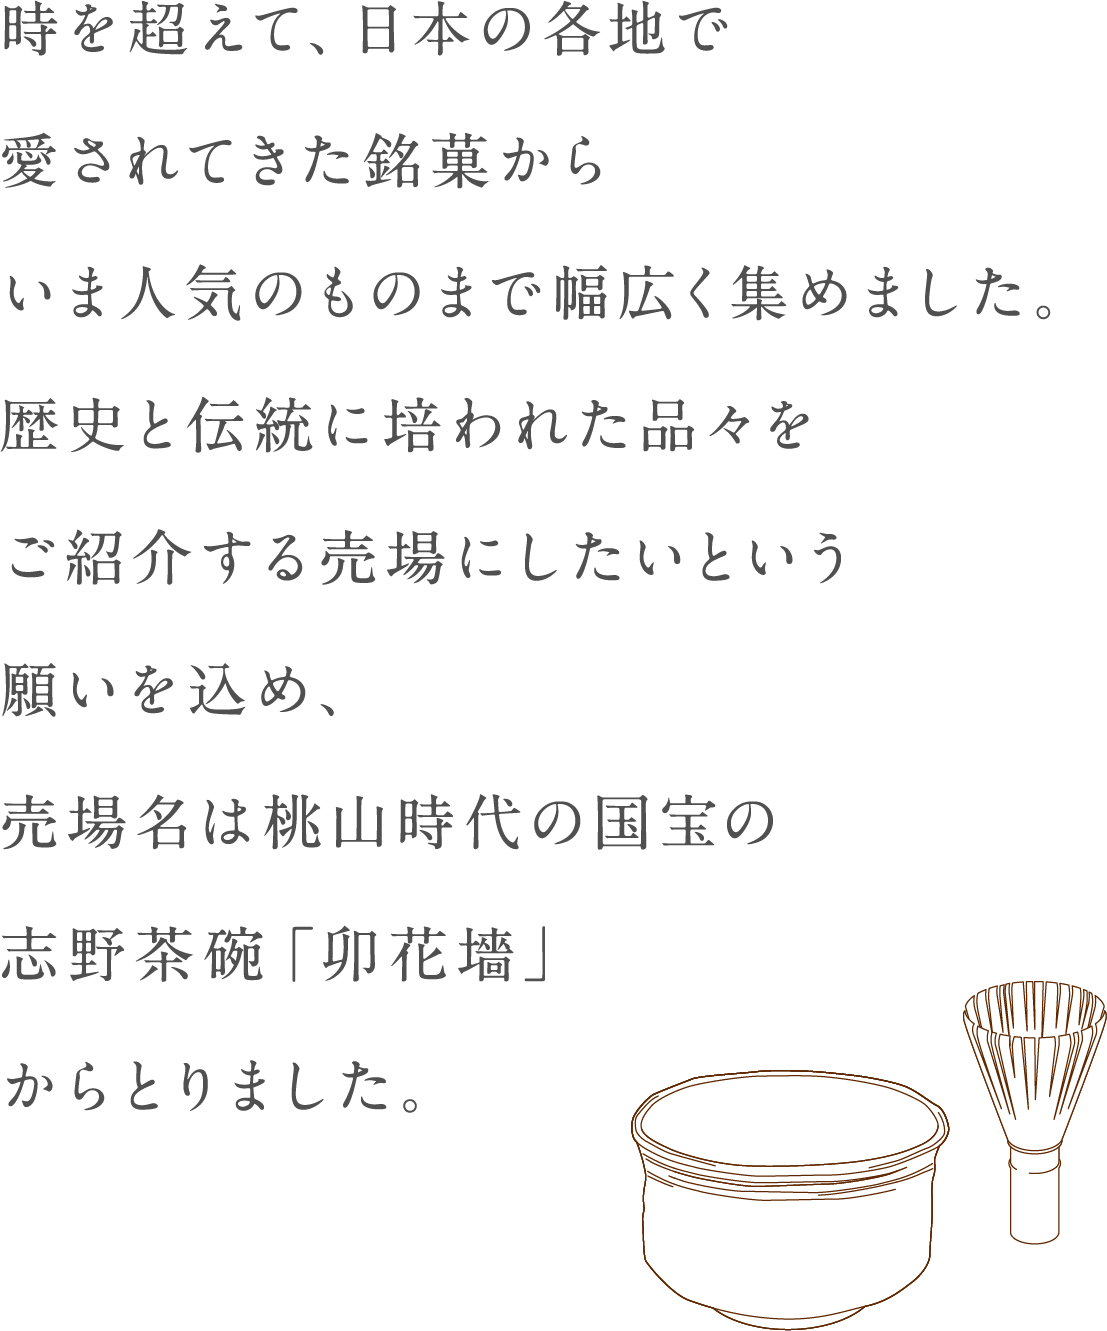 超出时候，现在到受欢迎的东西从被在日本的各地爱的銘菓广泛地集中起来了。拥挤，销售区名从桃山时代的国宝的志野茶碗"卯花墻"拿想把被历史和传统培养的东西换成介绍的销售区的愿望了。